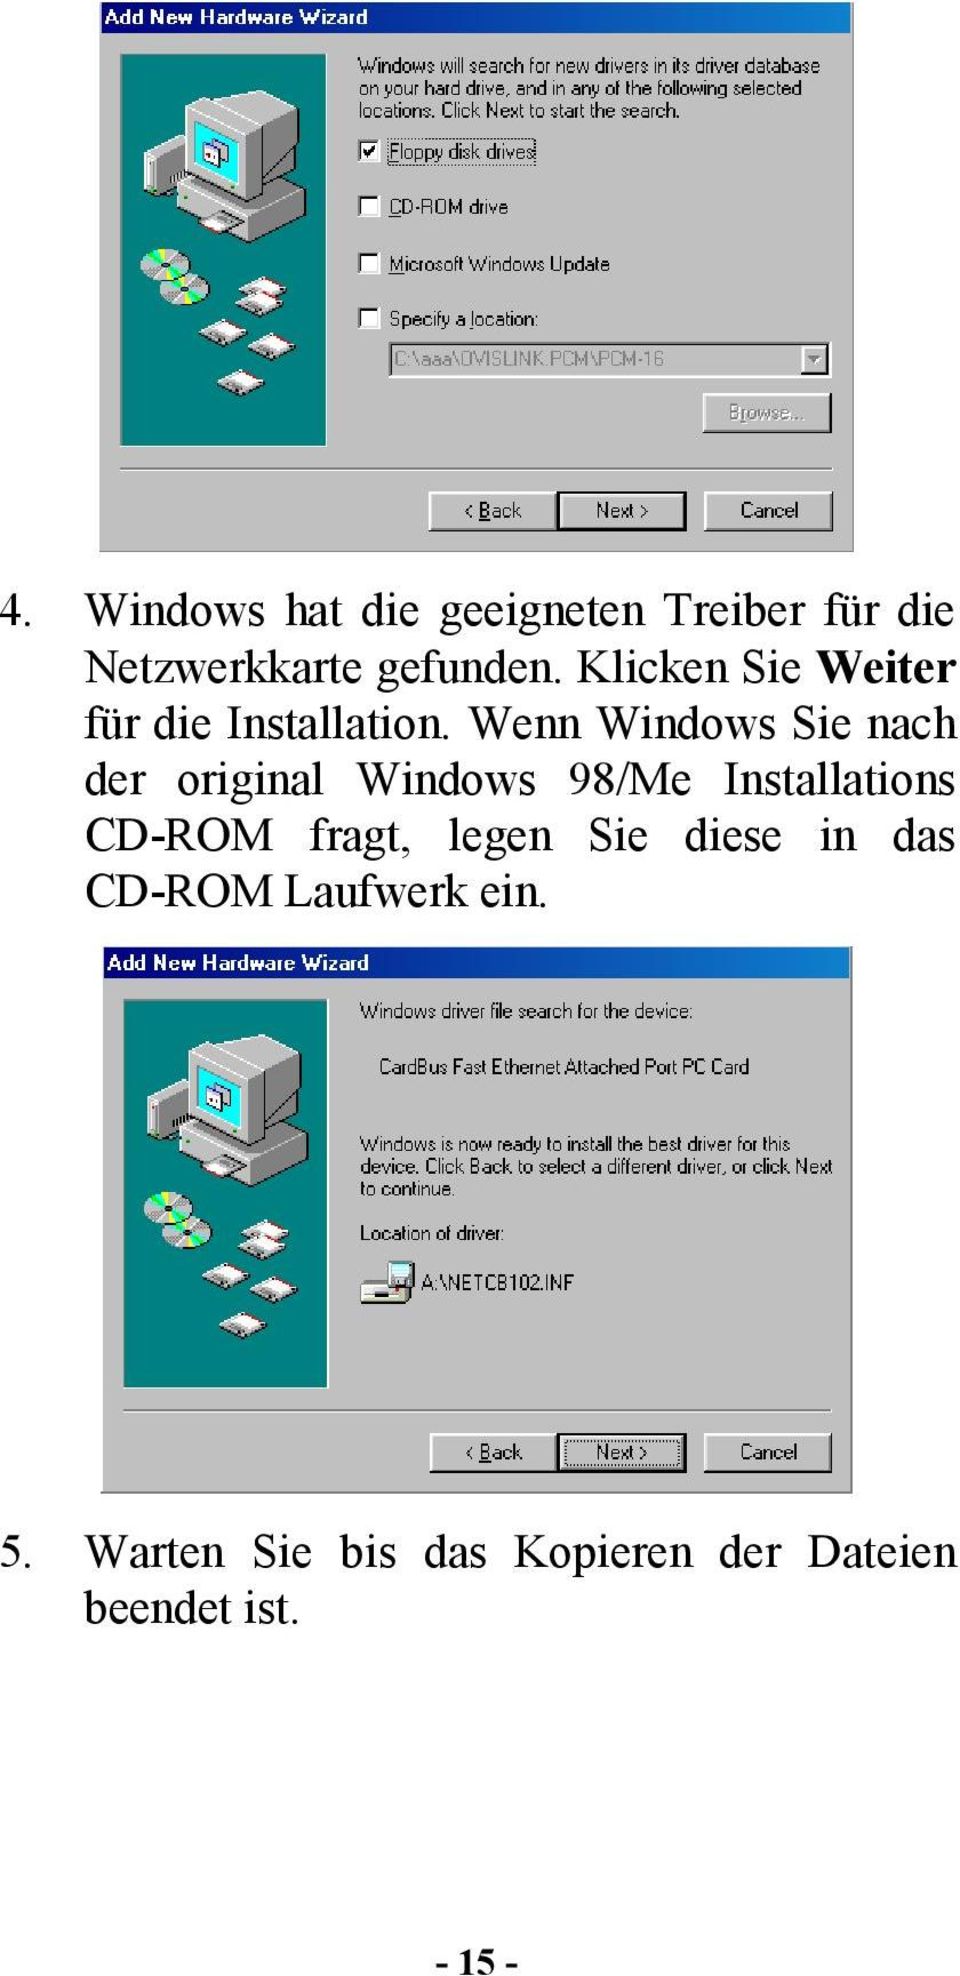 Wenn Windows Sie nach der original Windows 98/Me Installations CD-ROM